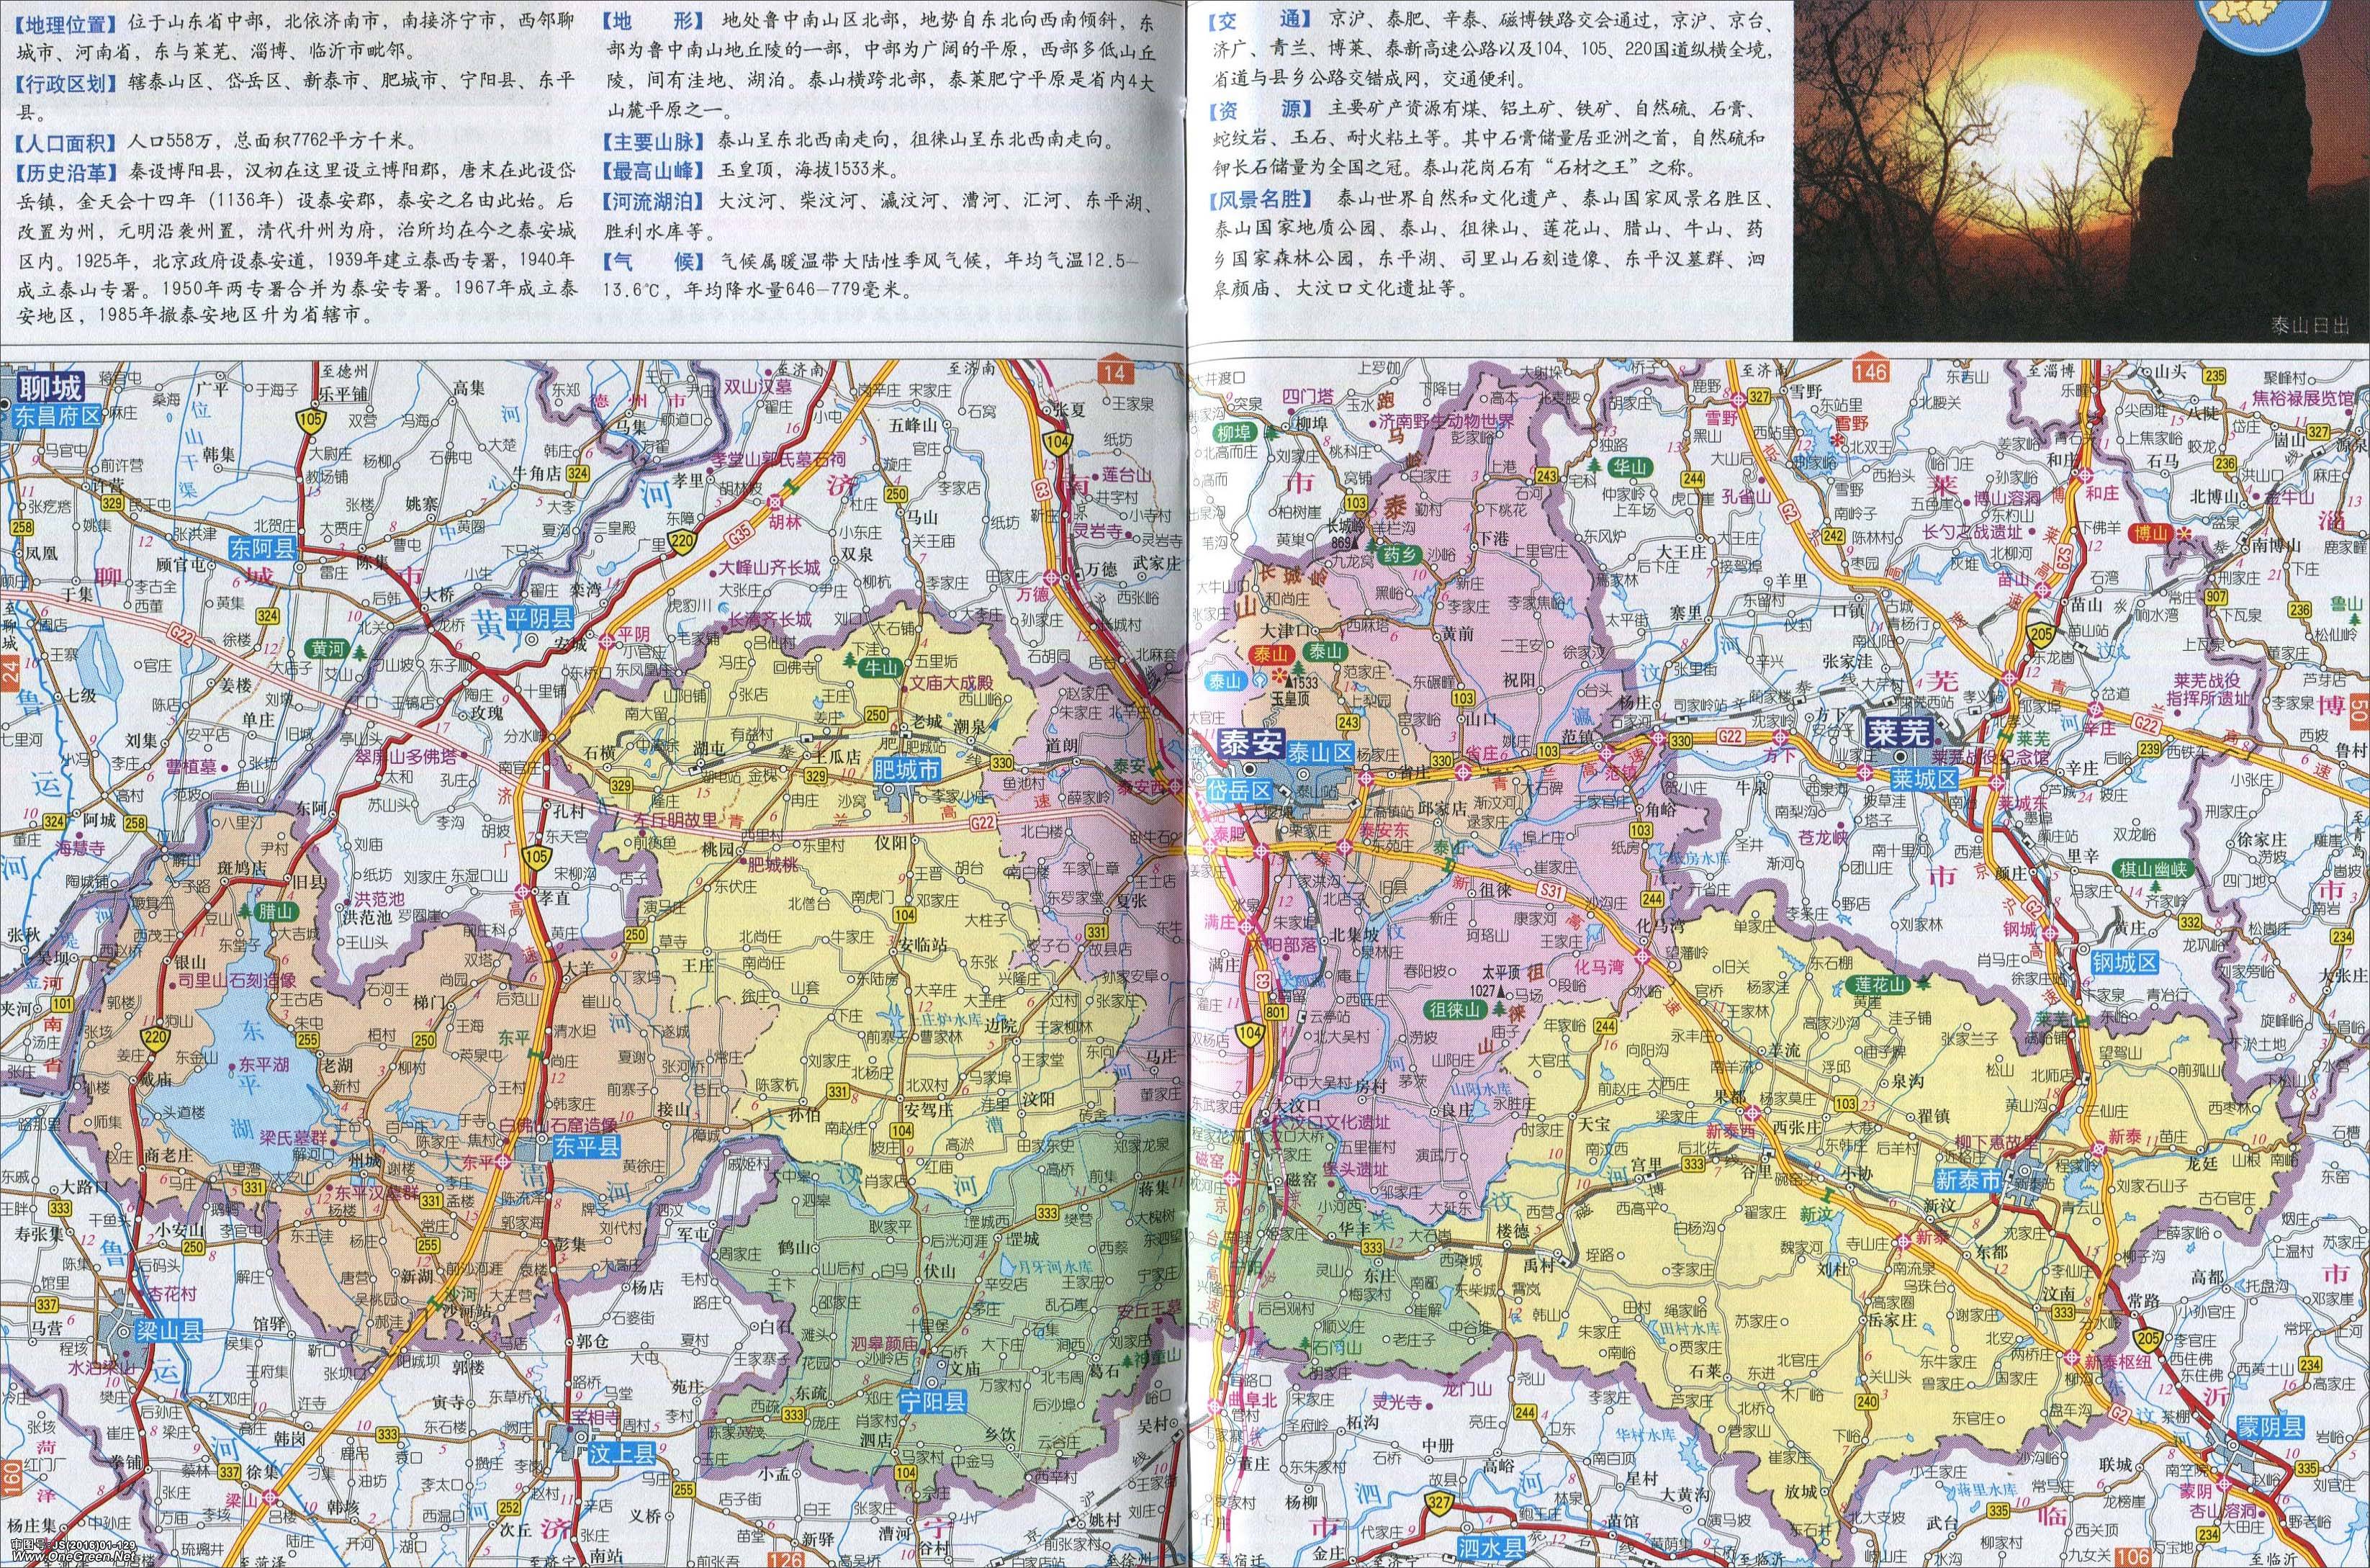 上一张地图: 东平县_肥城市地图  | 泰安 |  下一张地图: 泰安城区